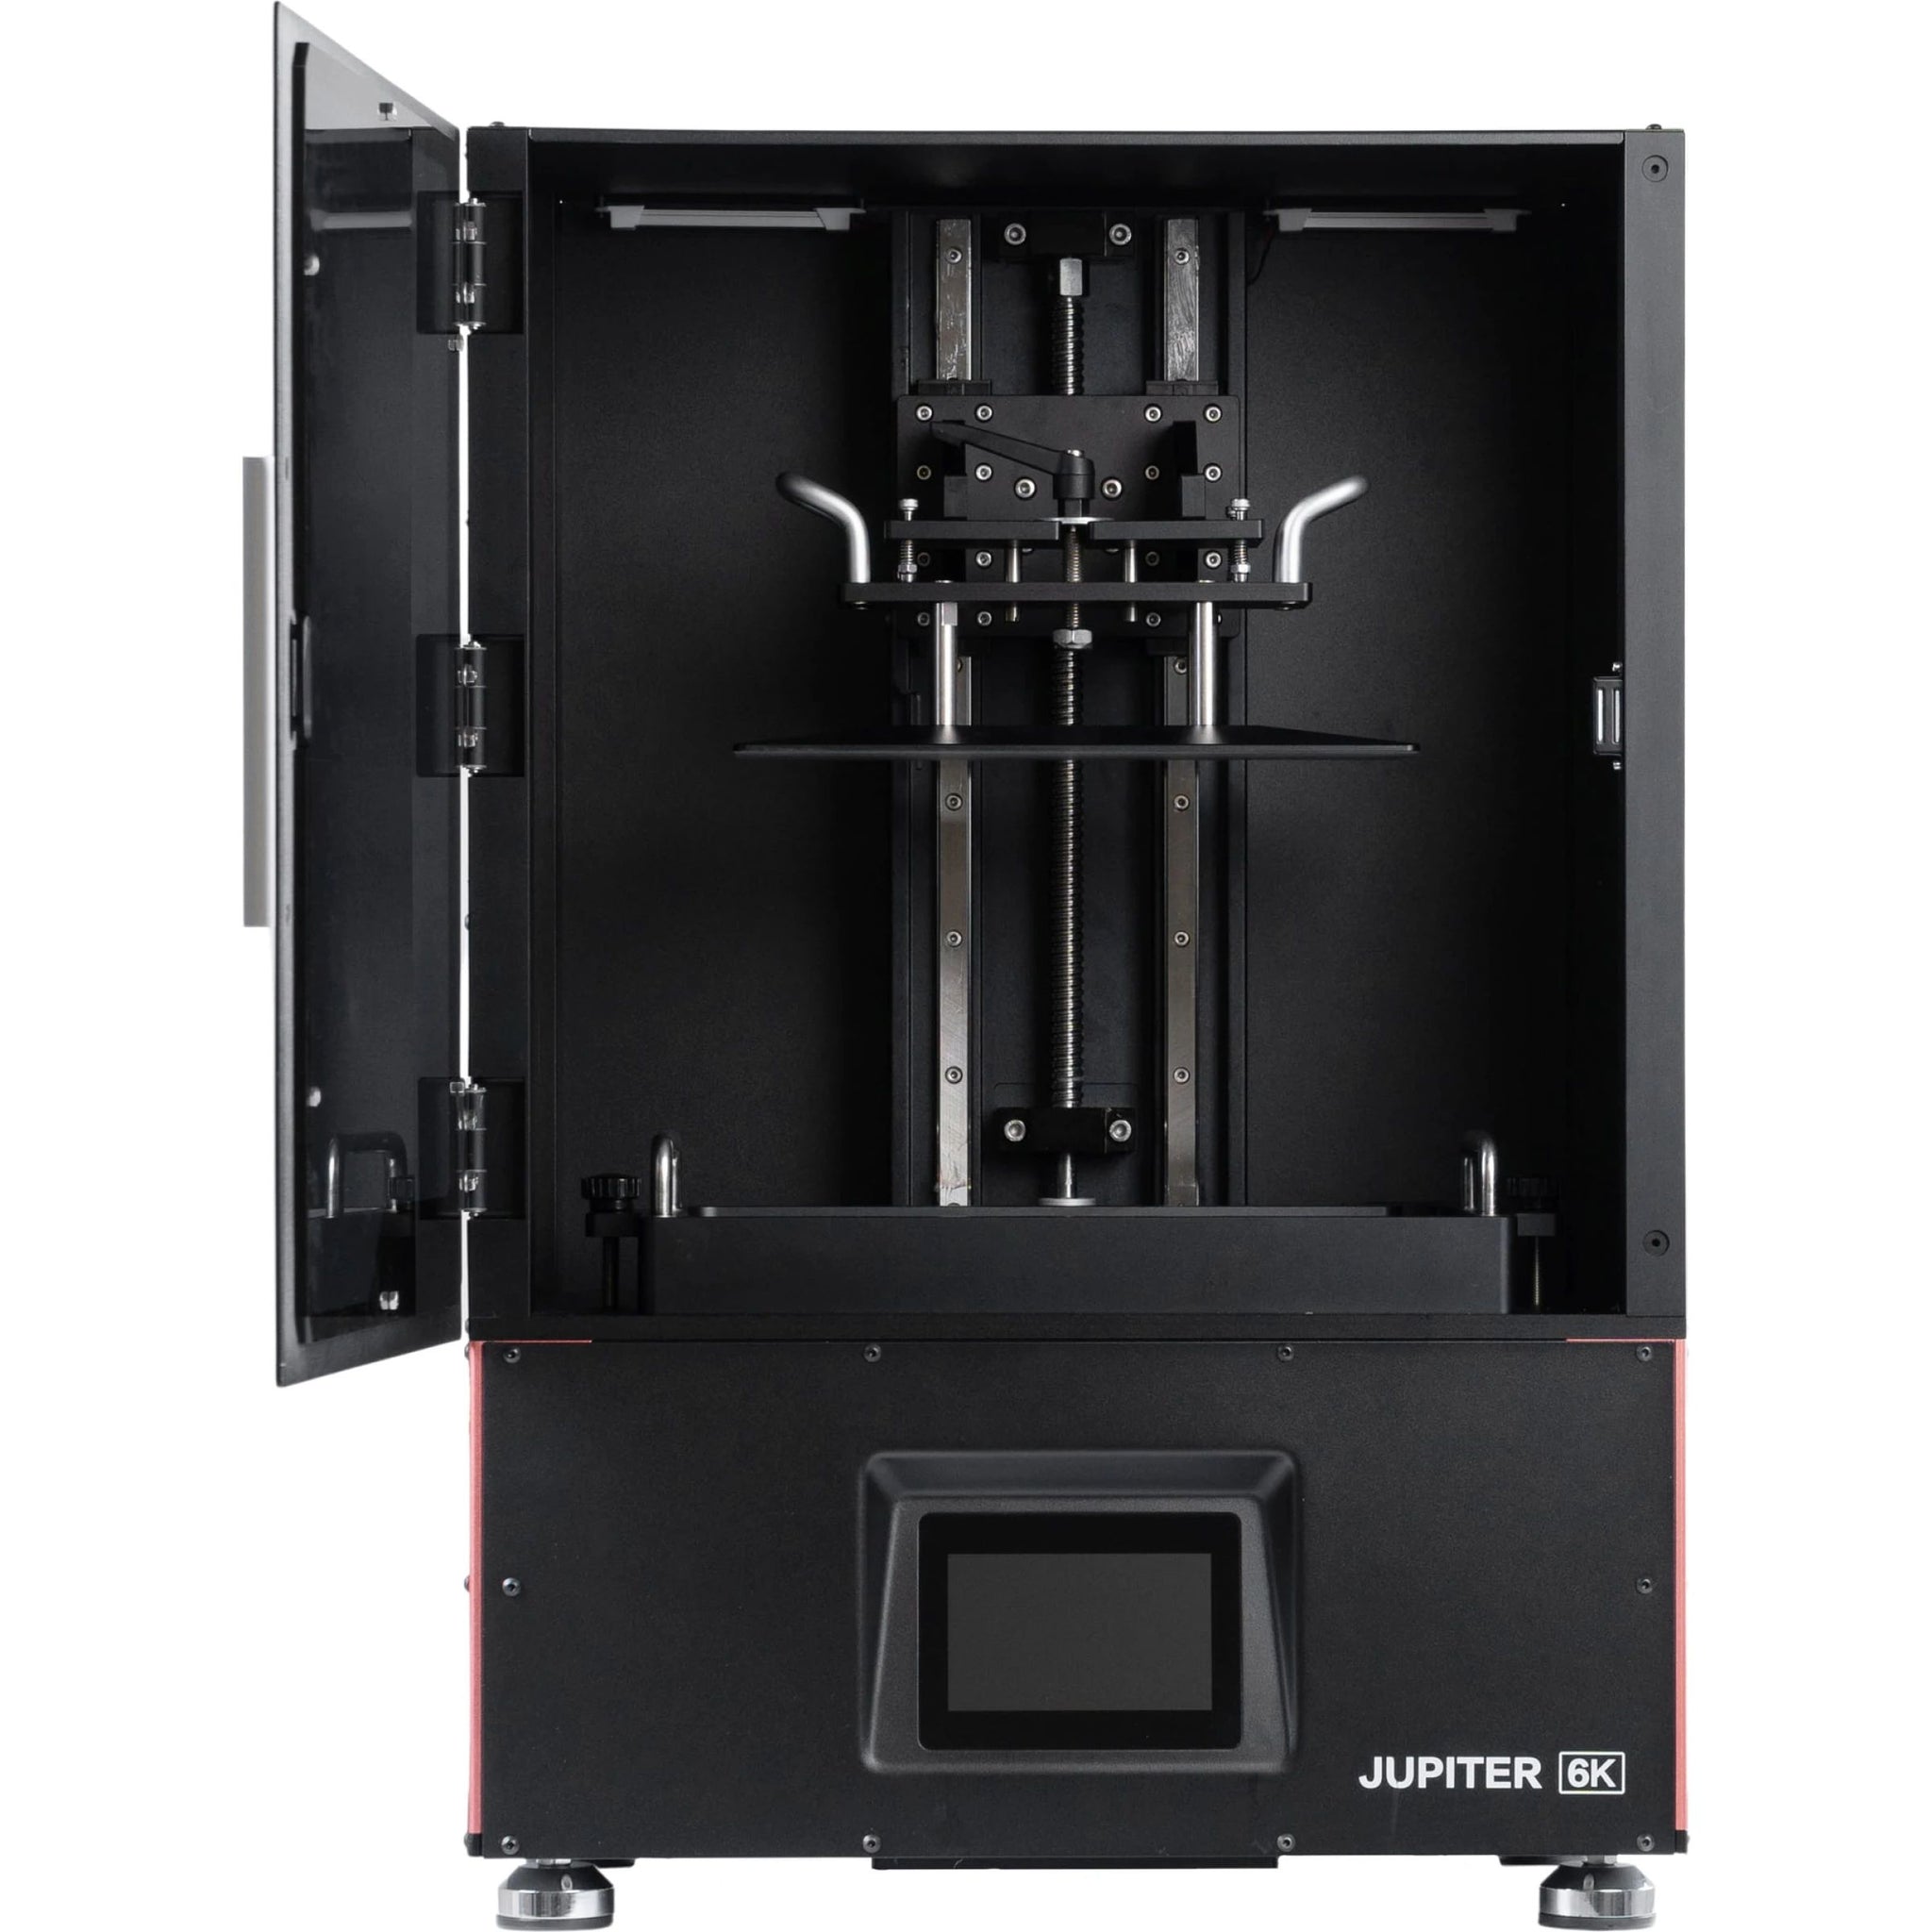 ELEGOO Jupiter 6K Resin 3D Printer – ELEGOO EU